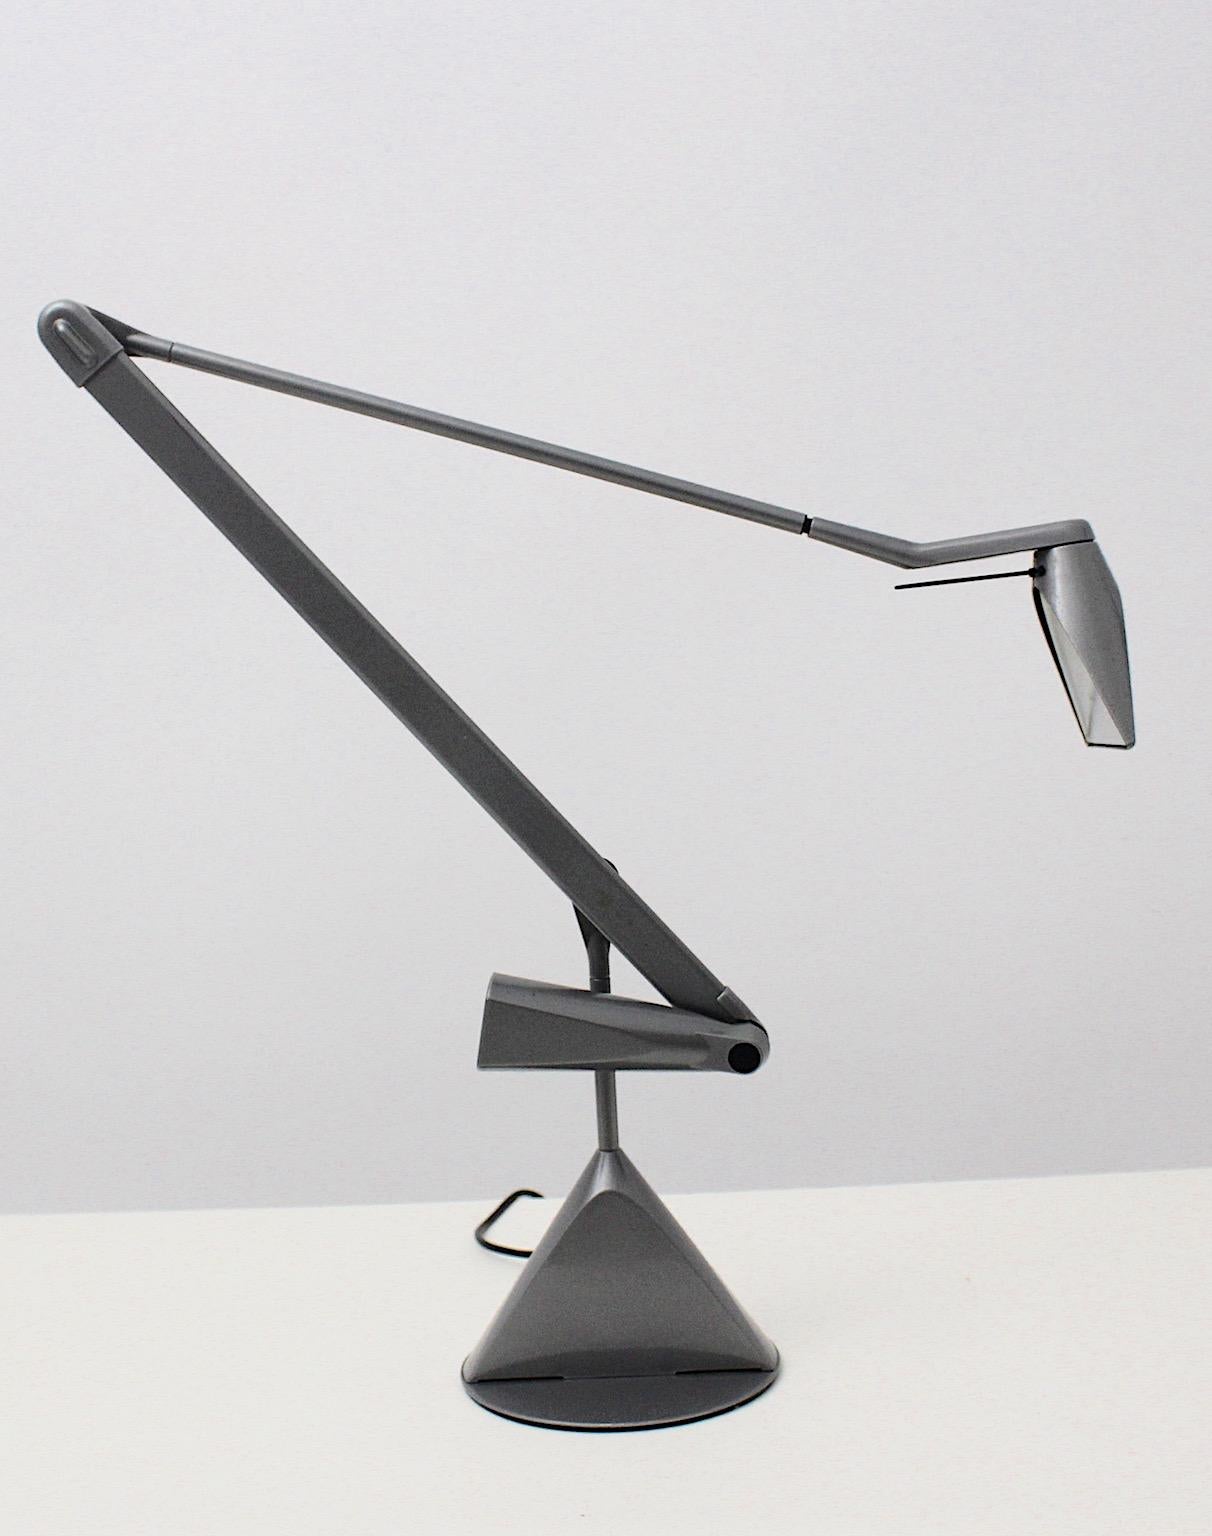 Lampe de bureau moderne grise, lampe d'architecte ou lampe de table modèle Zelig conçue par Walter A. Monici pour lumina Italie, 1980.
La lampe de bureau présente une construction réglable, qui est ajustable de 52 cm à 133 cm.
Interrupteur à deux